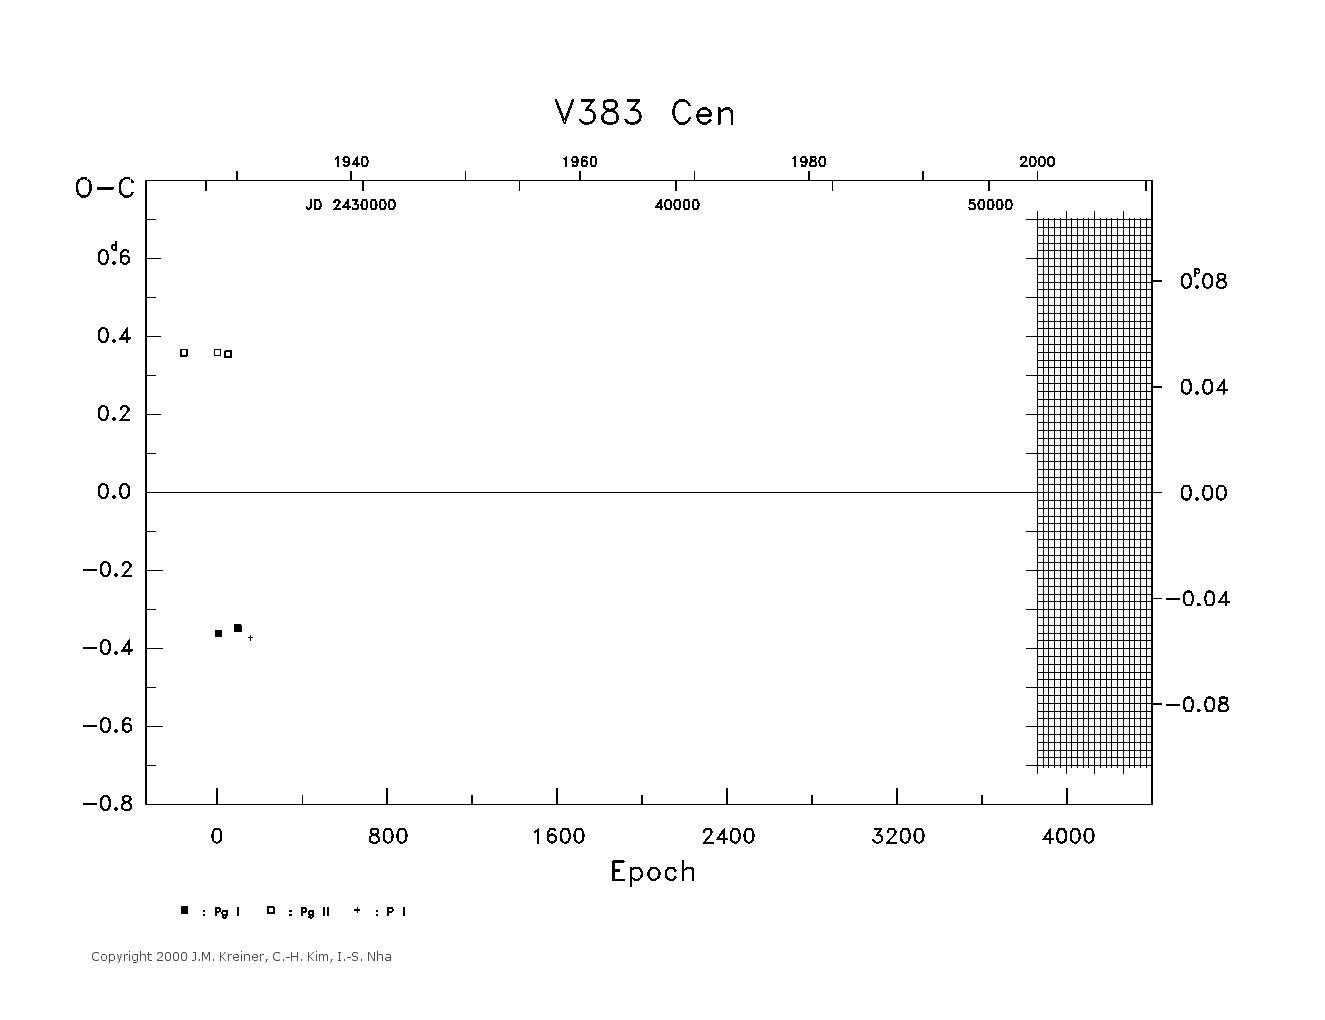 [IMAGE: large V383 CEN O-C diagram]